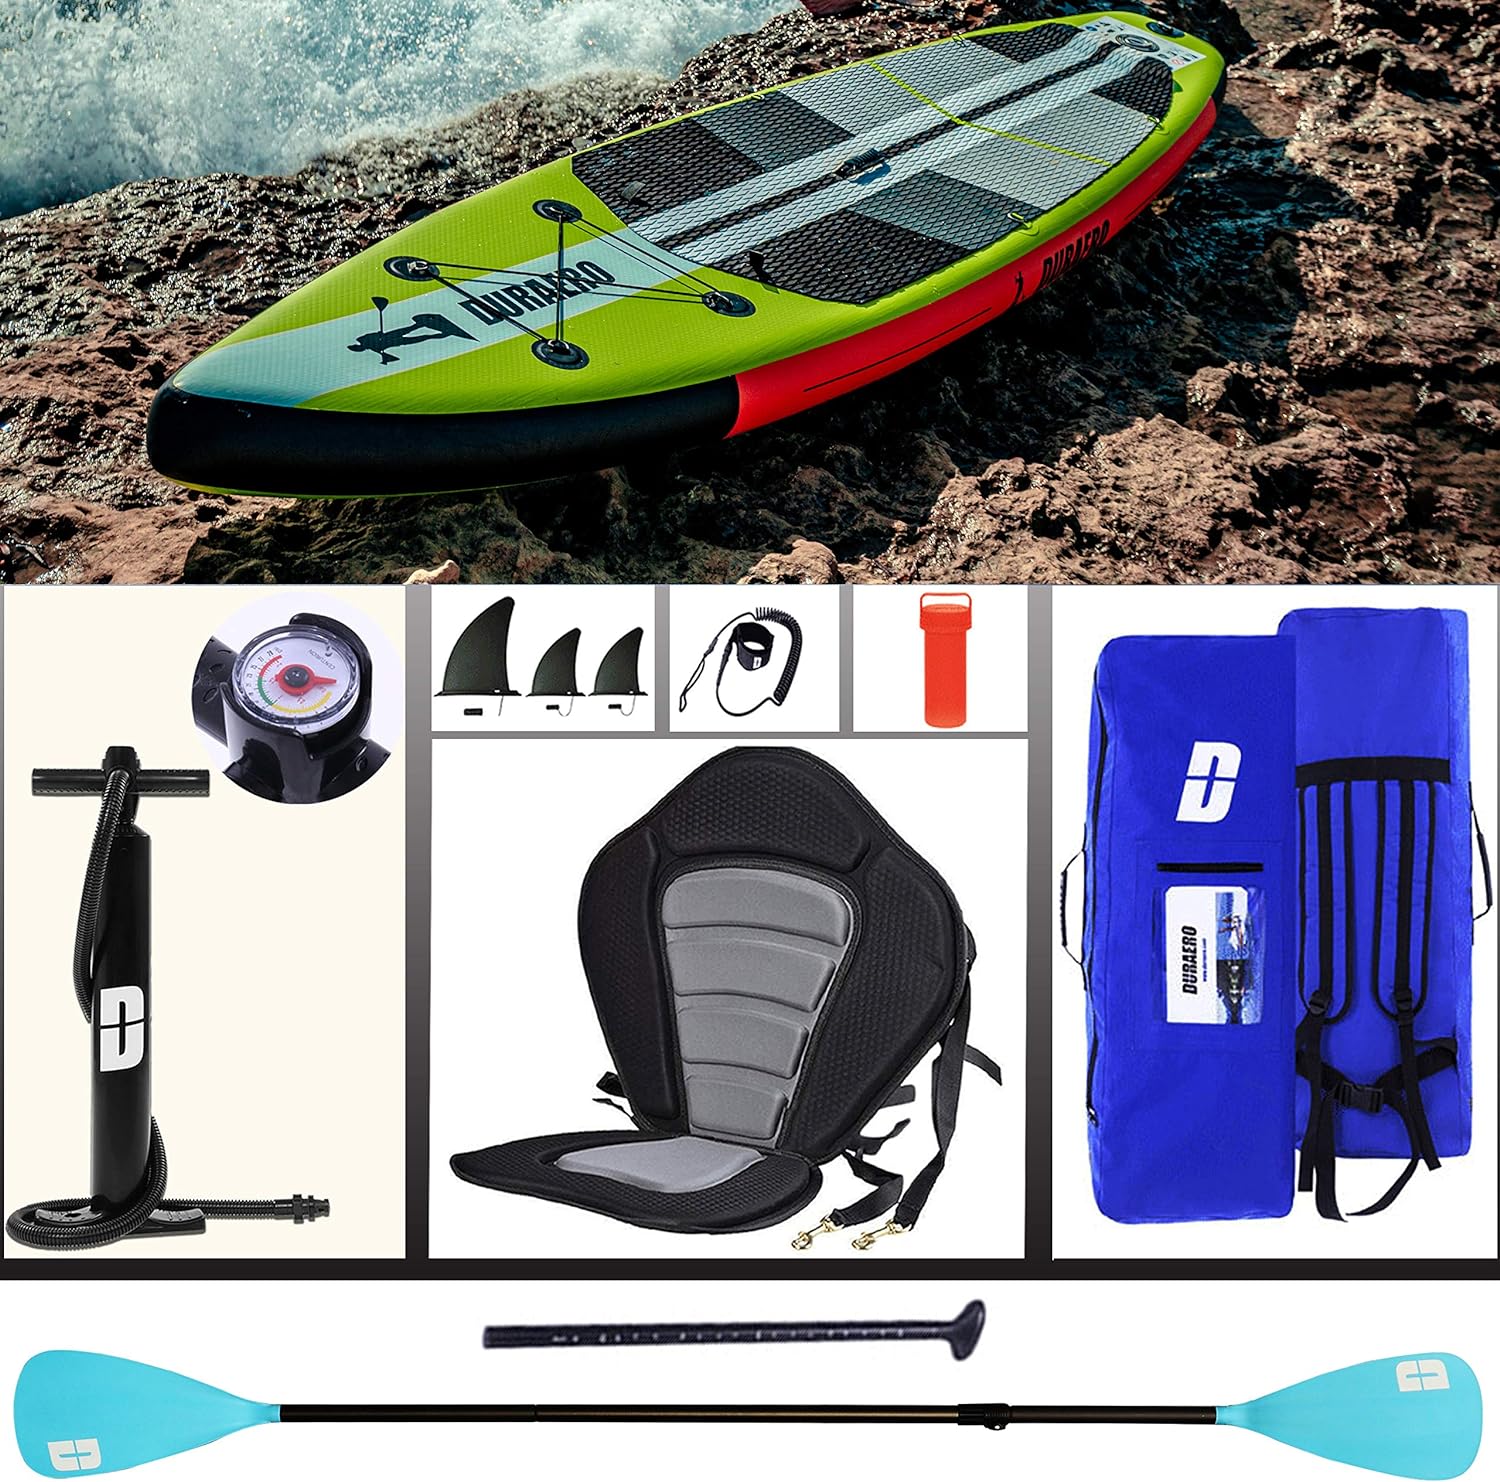 Planche de paddling Stand up paddling SUP - Siège kayak - 330 x 76 x 15 cm - Jusqu'à 150 kg - Coussinet intégré - 3 Finlandais - Double pagaie réglable - Accessoires complets - fitnessterapy